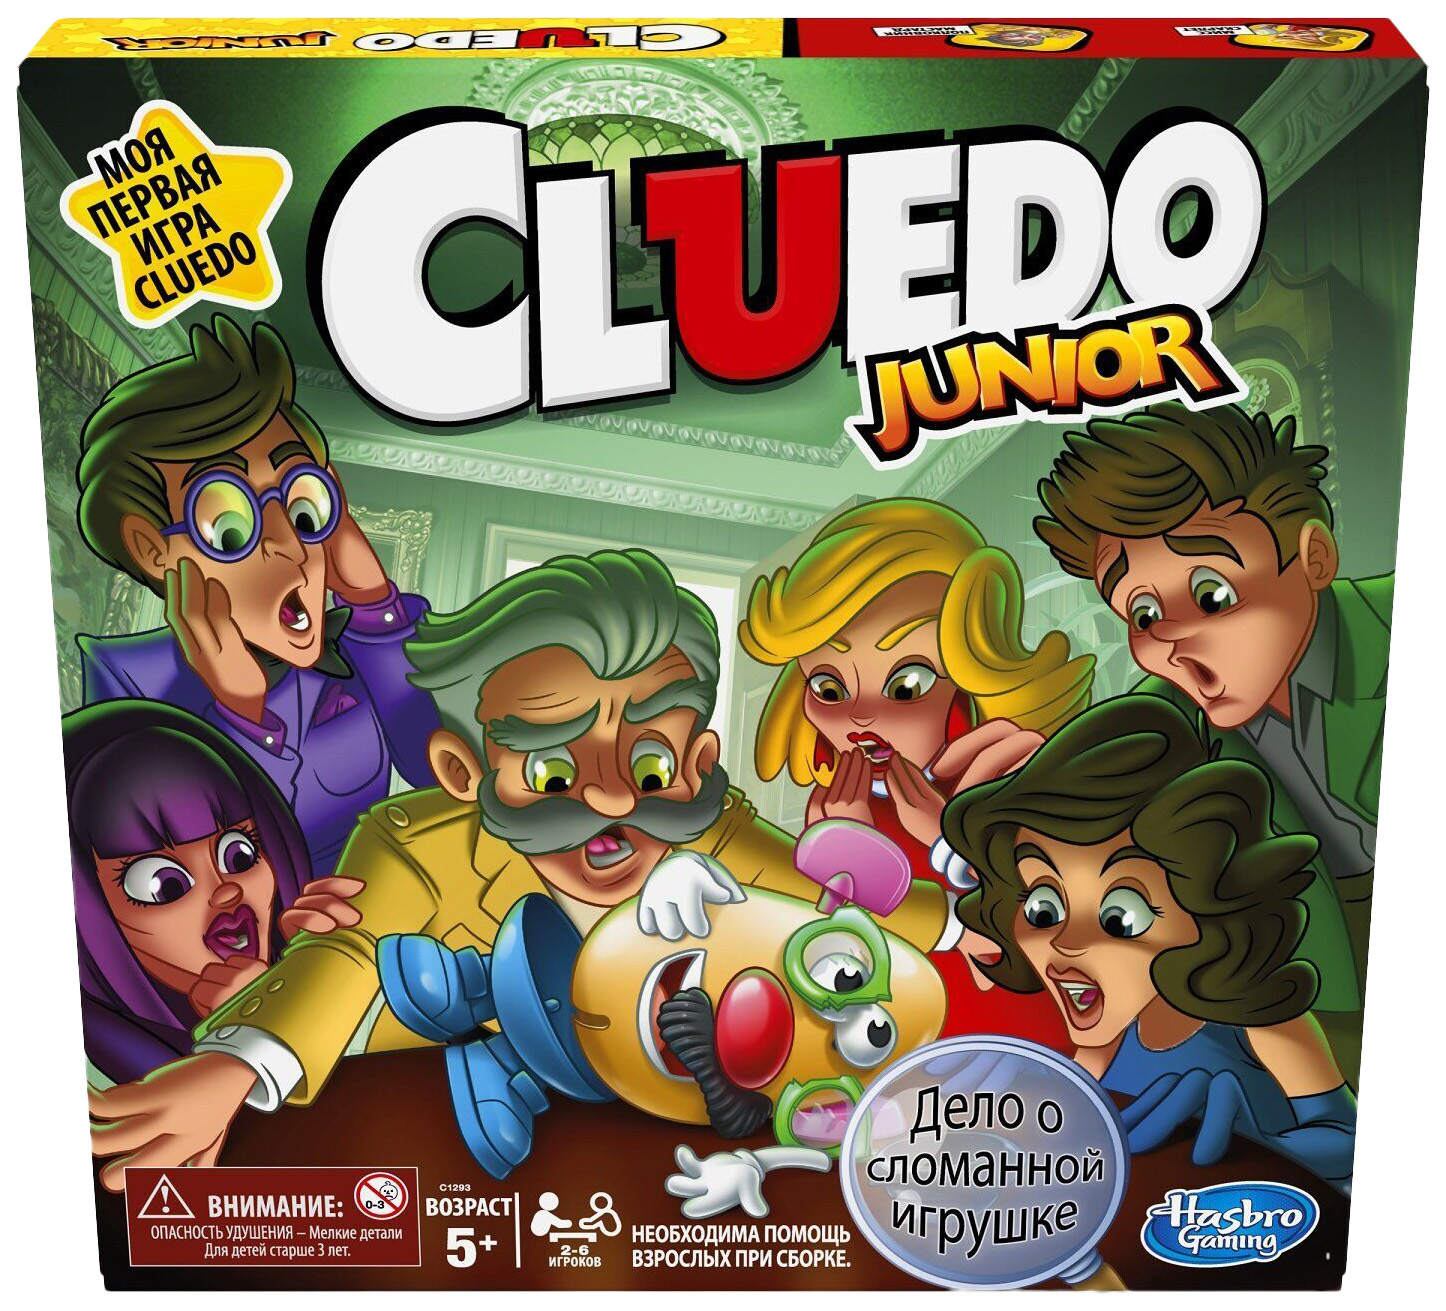 Игра настольная Hasbro Клуэдо джуниор C1293E76 настольная игра hasbro риск джуниор e6936121